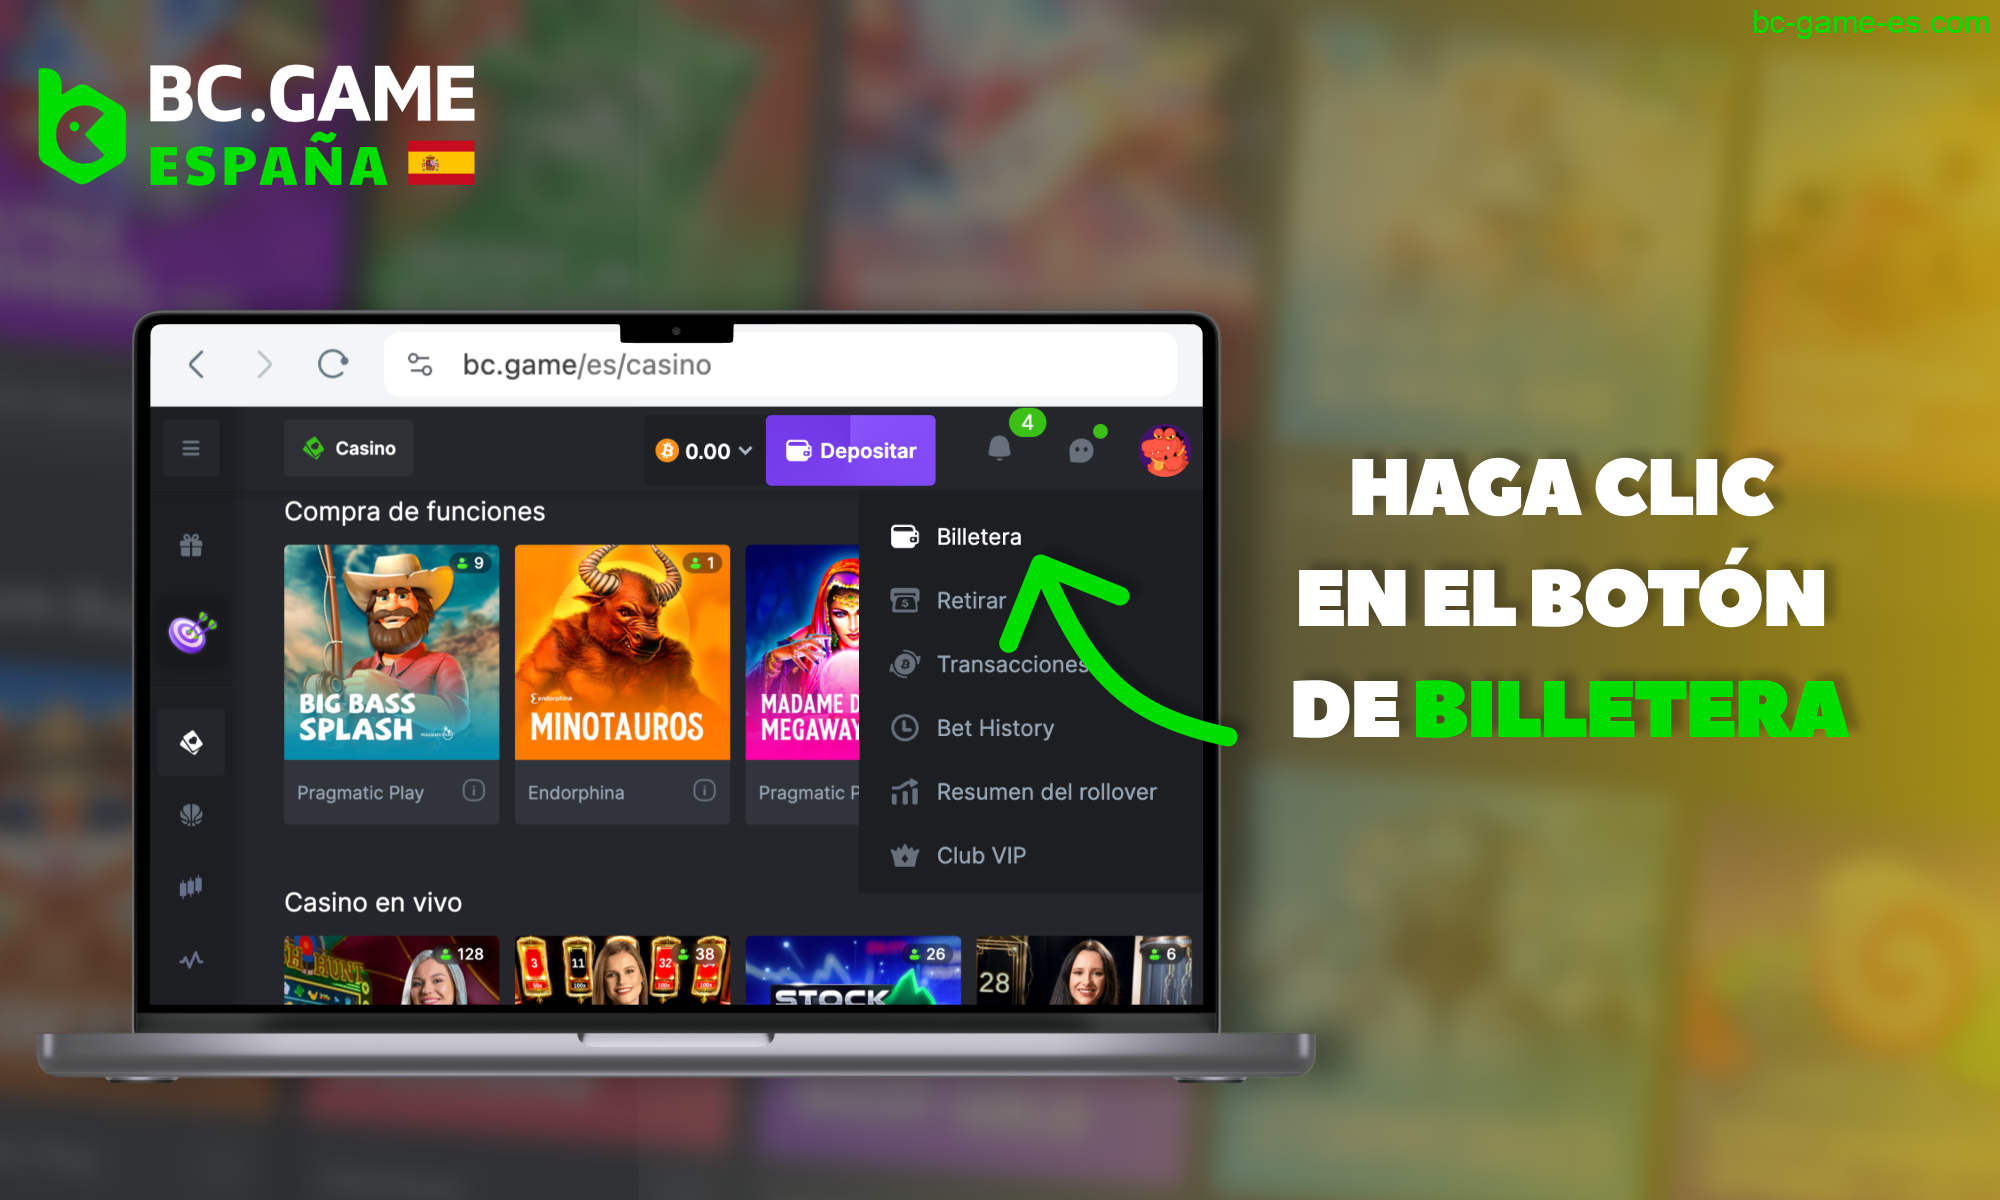 Vaya a la sección "Wallet" en el sitio web de BC Game España